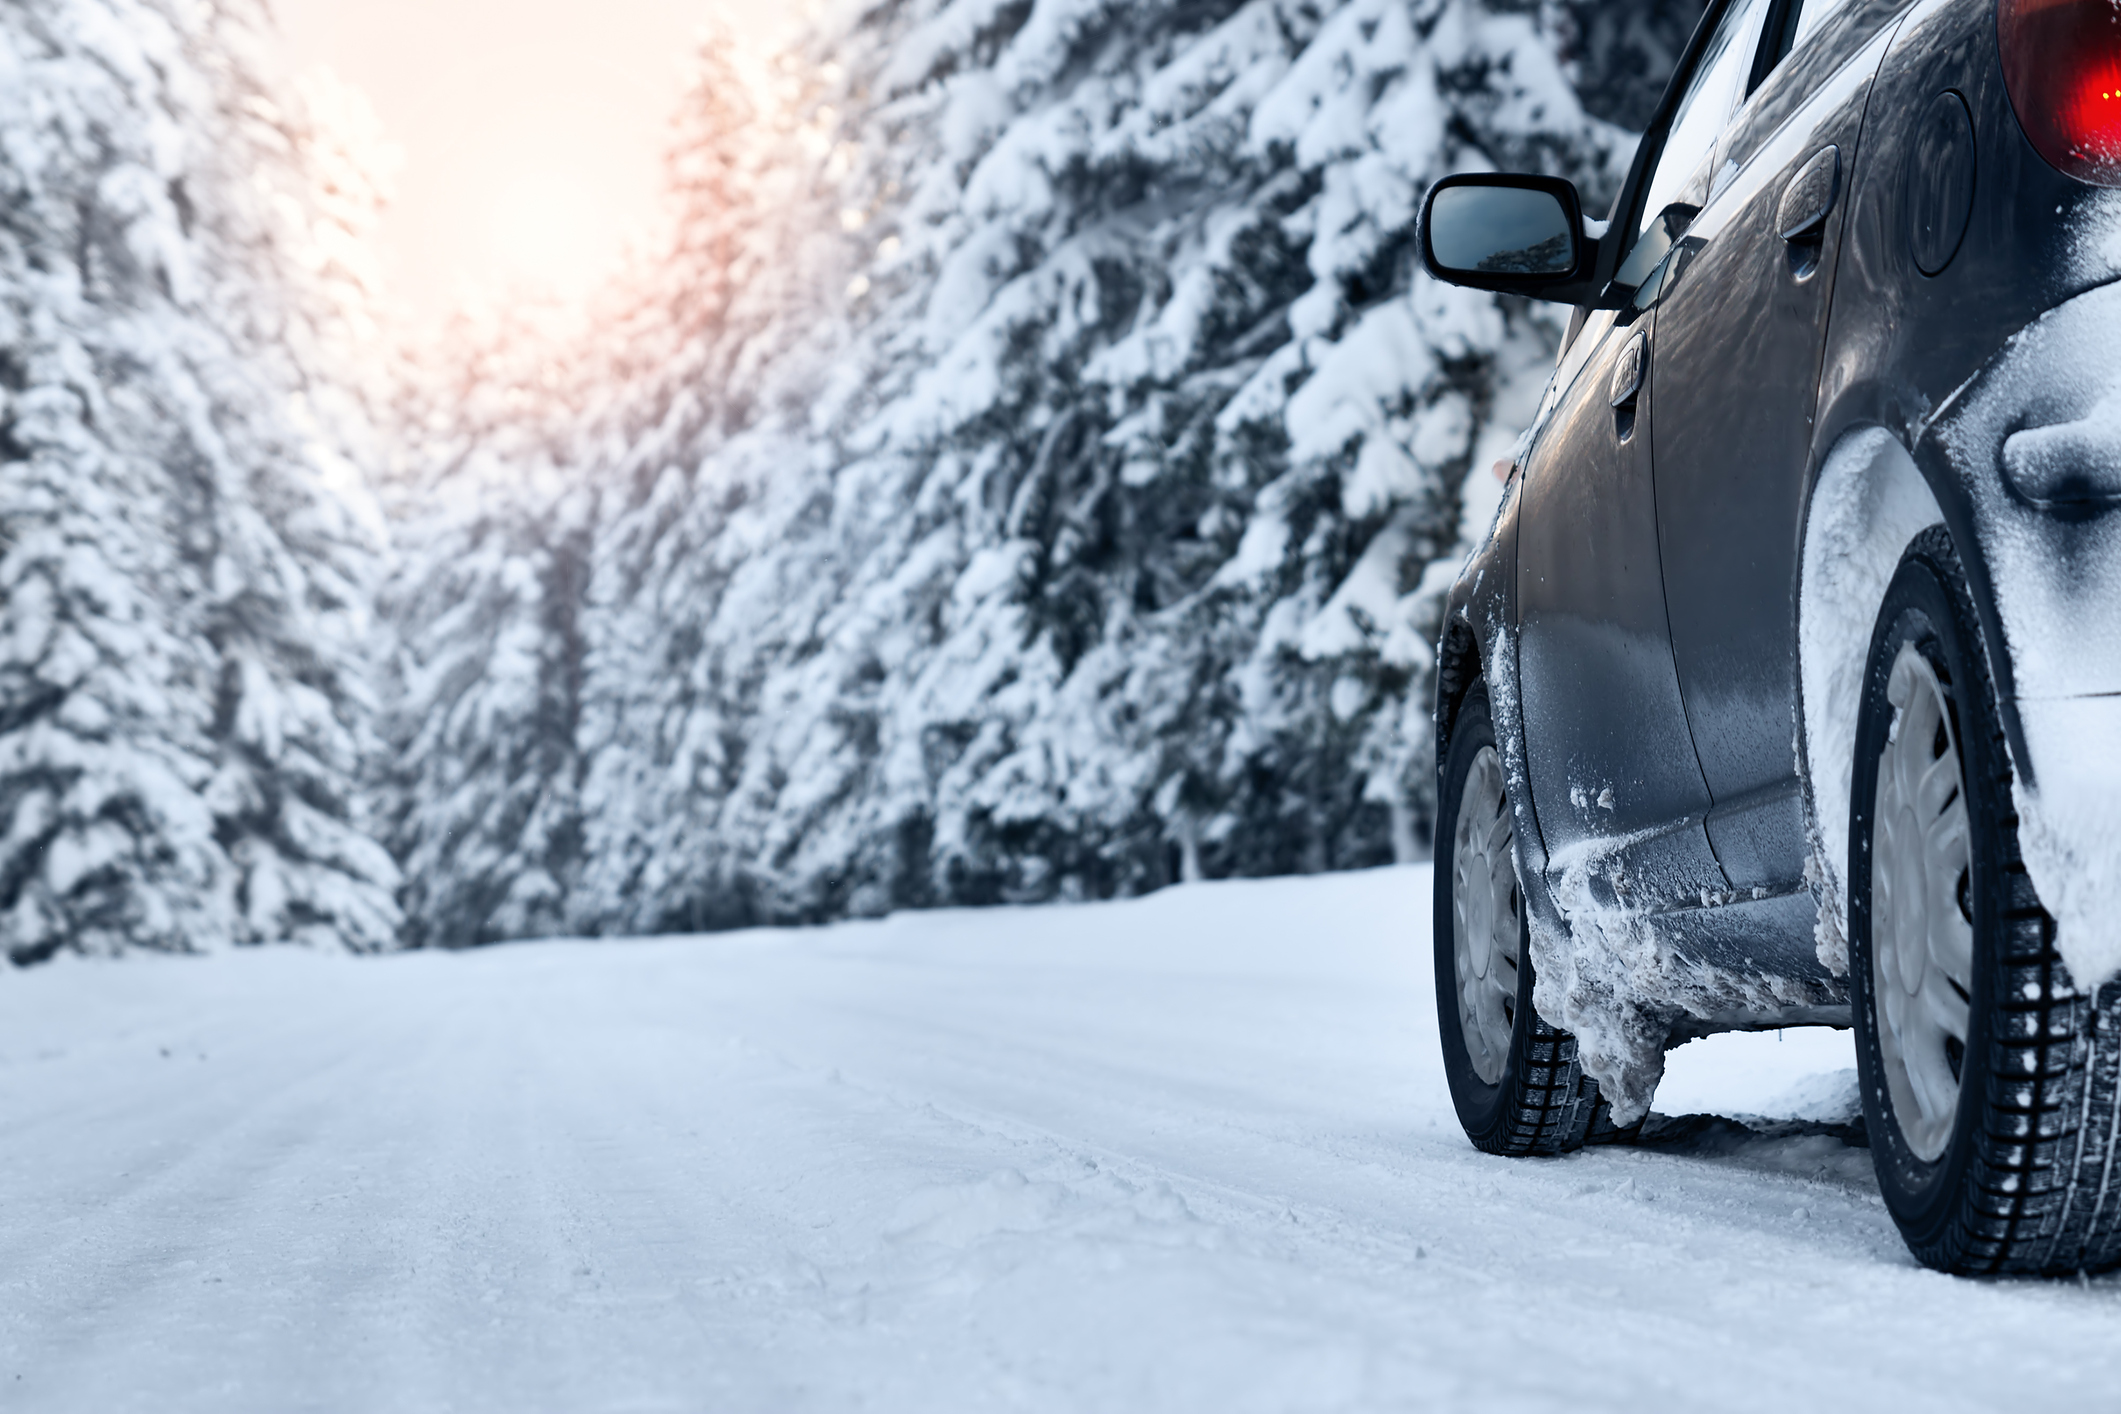 Auto steckt im Schnee fest - mit 7 Tipps befreien Sie das Auto